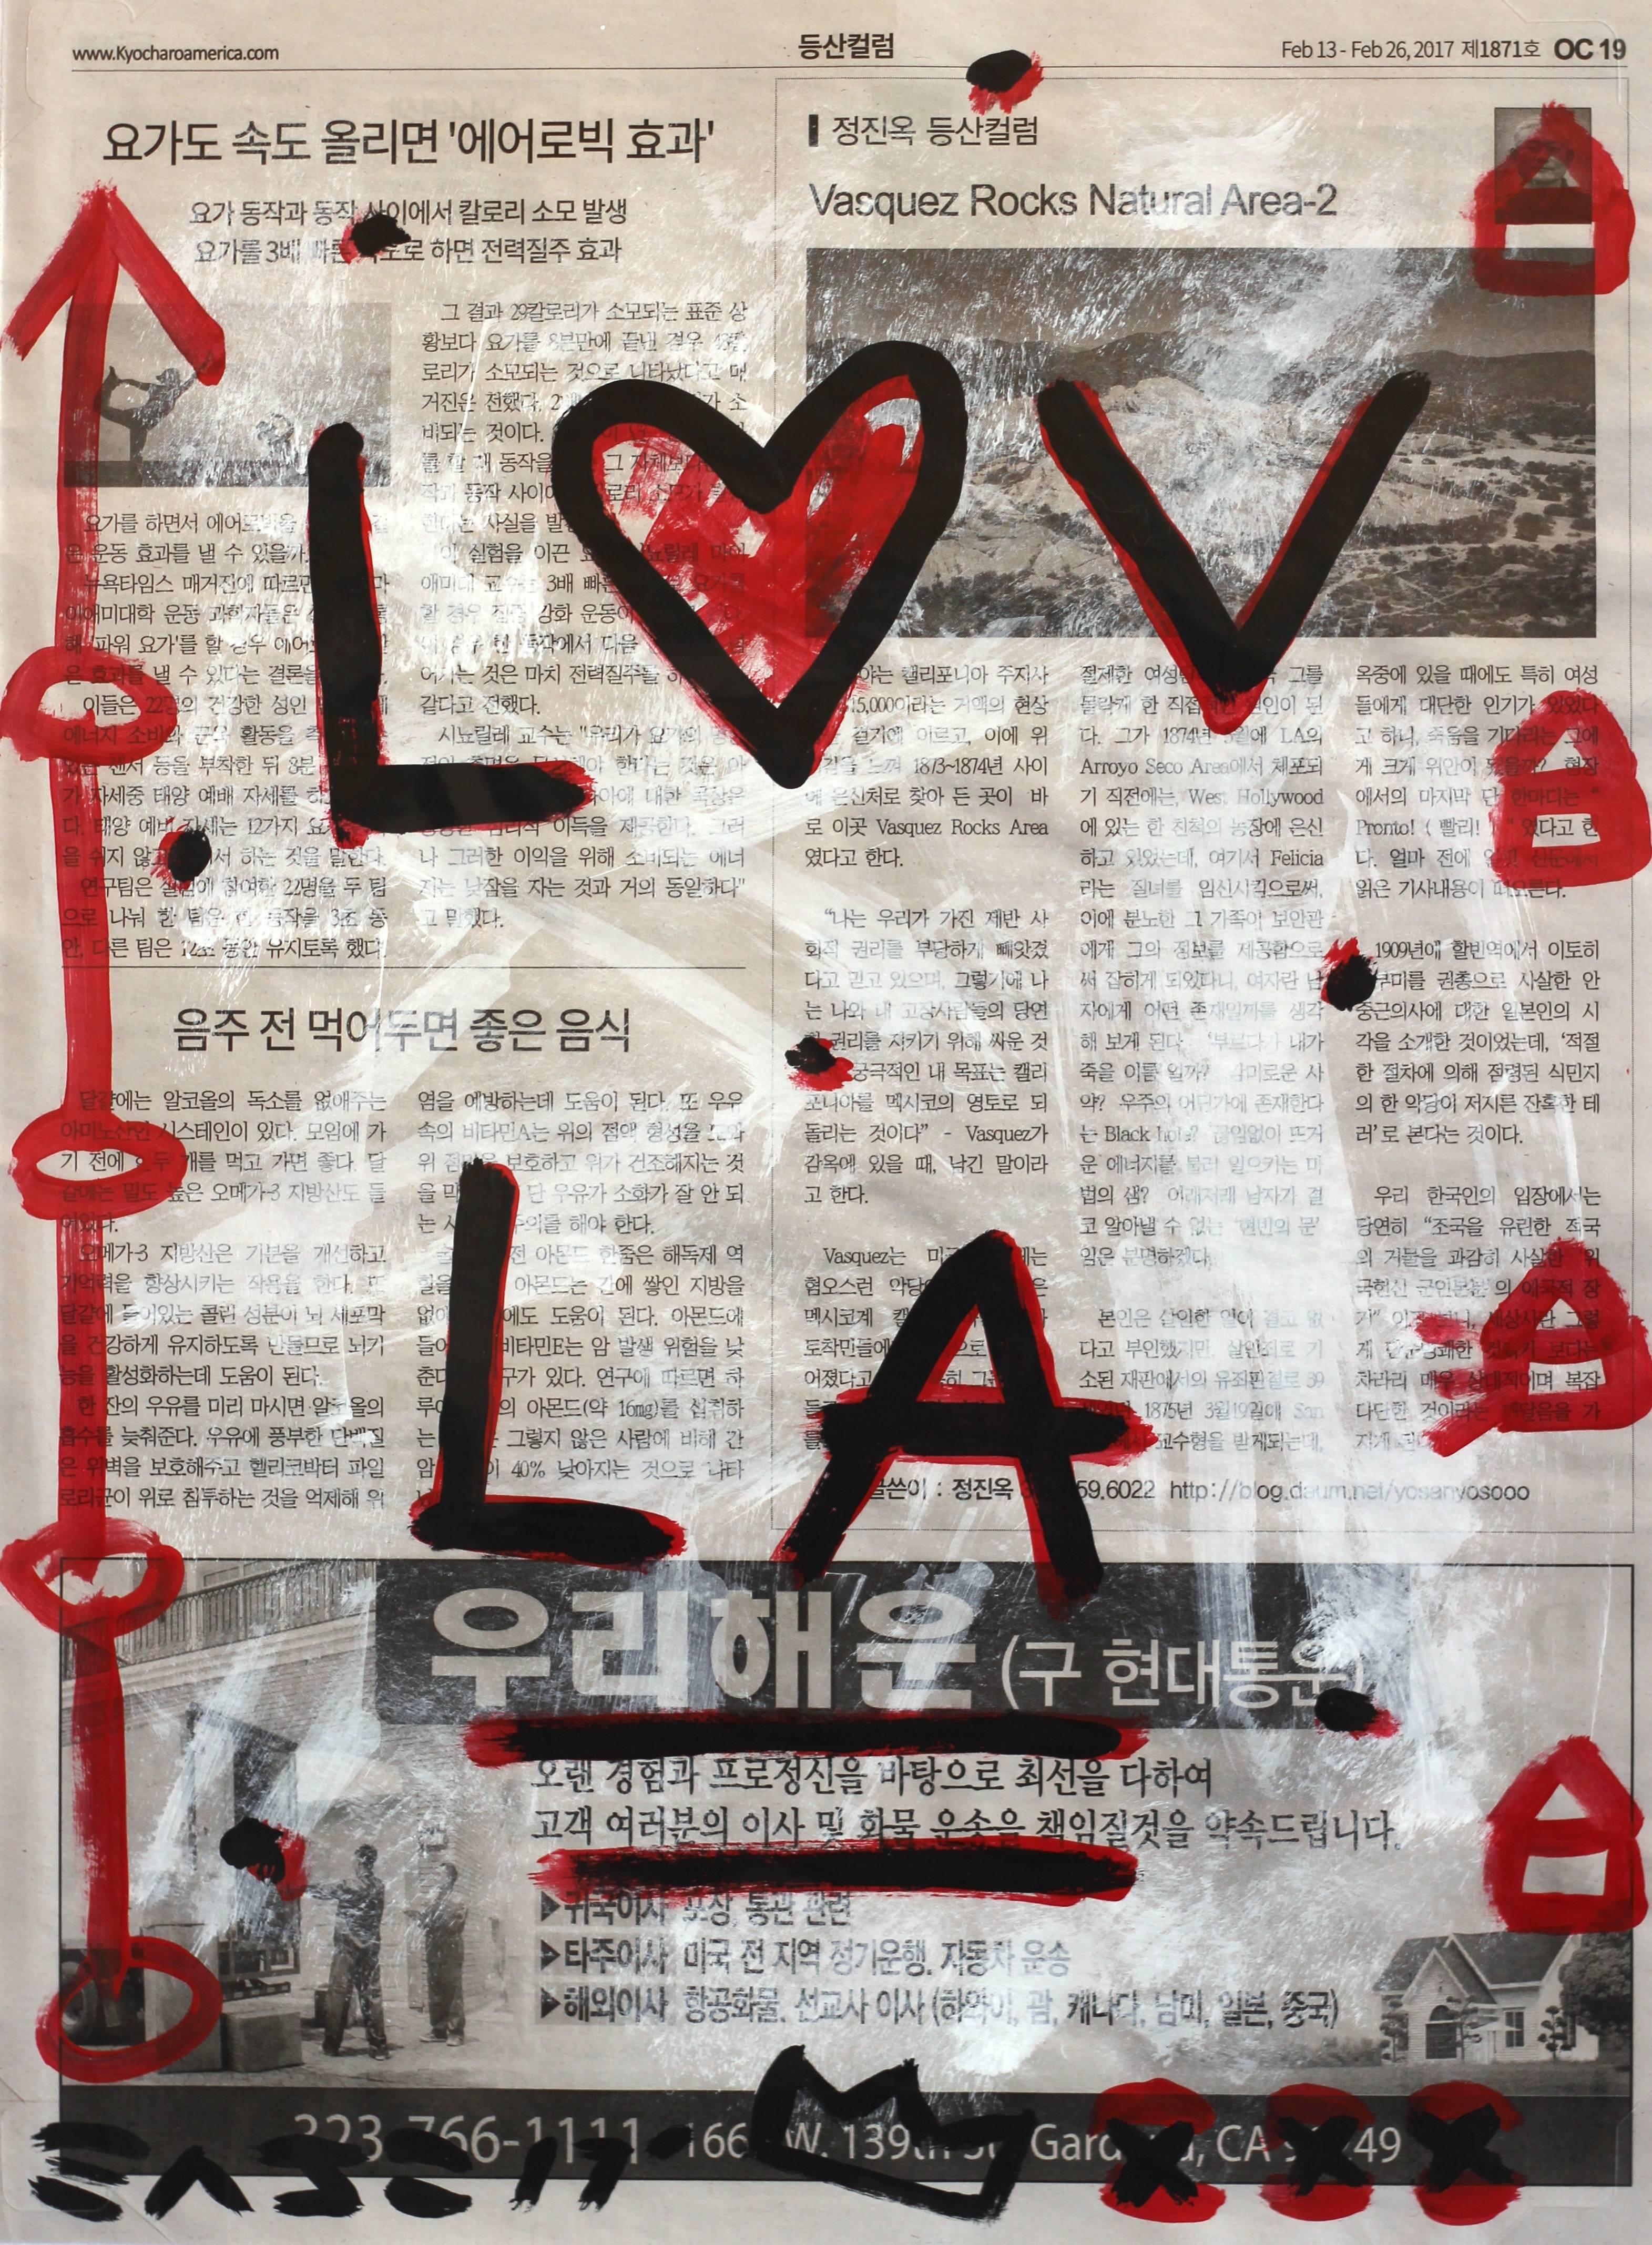 Love LA - Mixed Media Art by Gary John